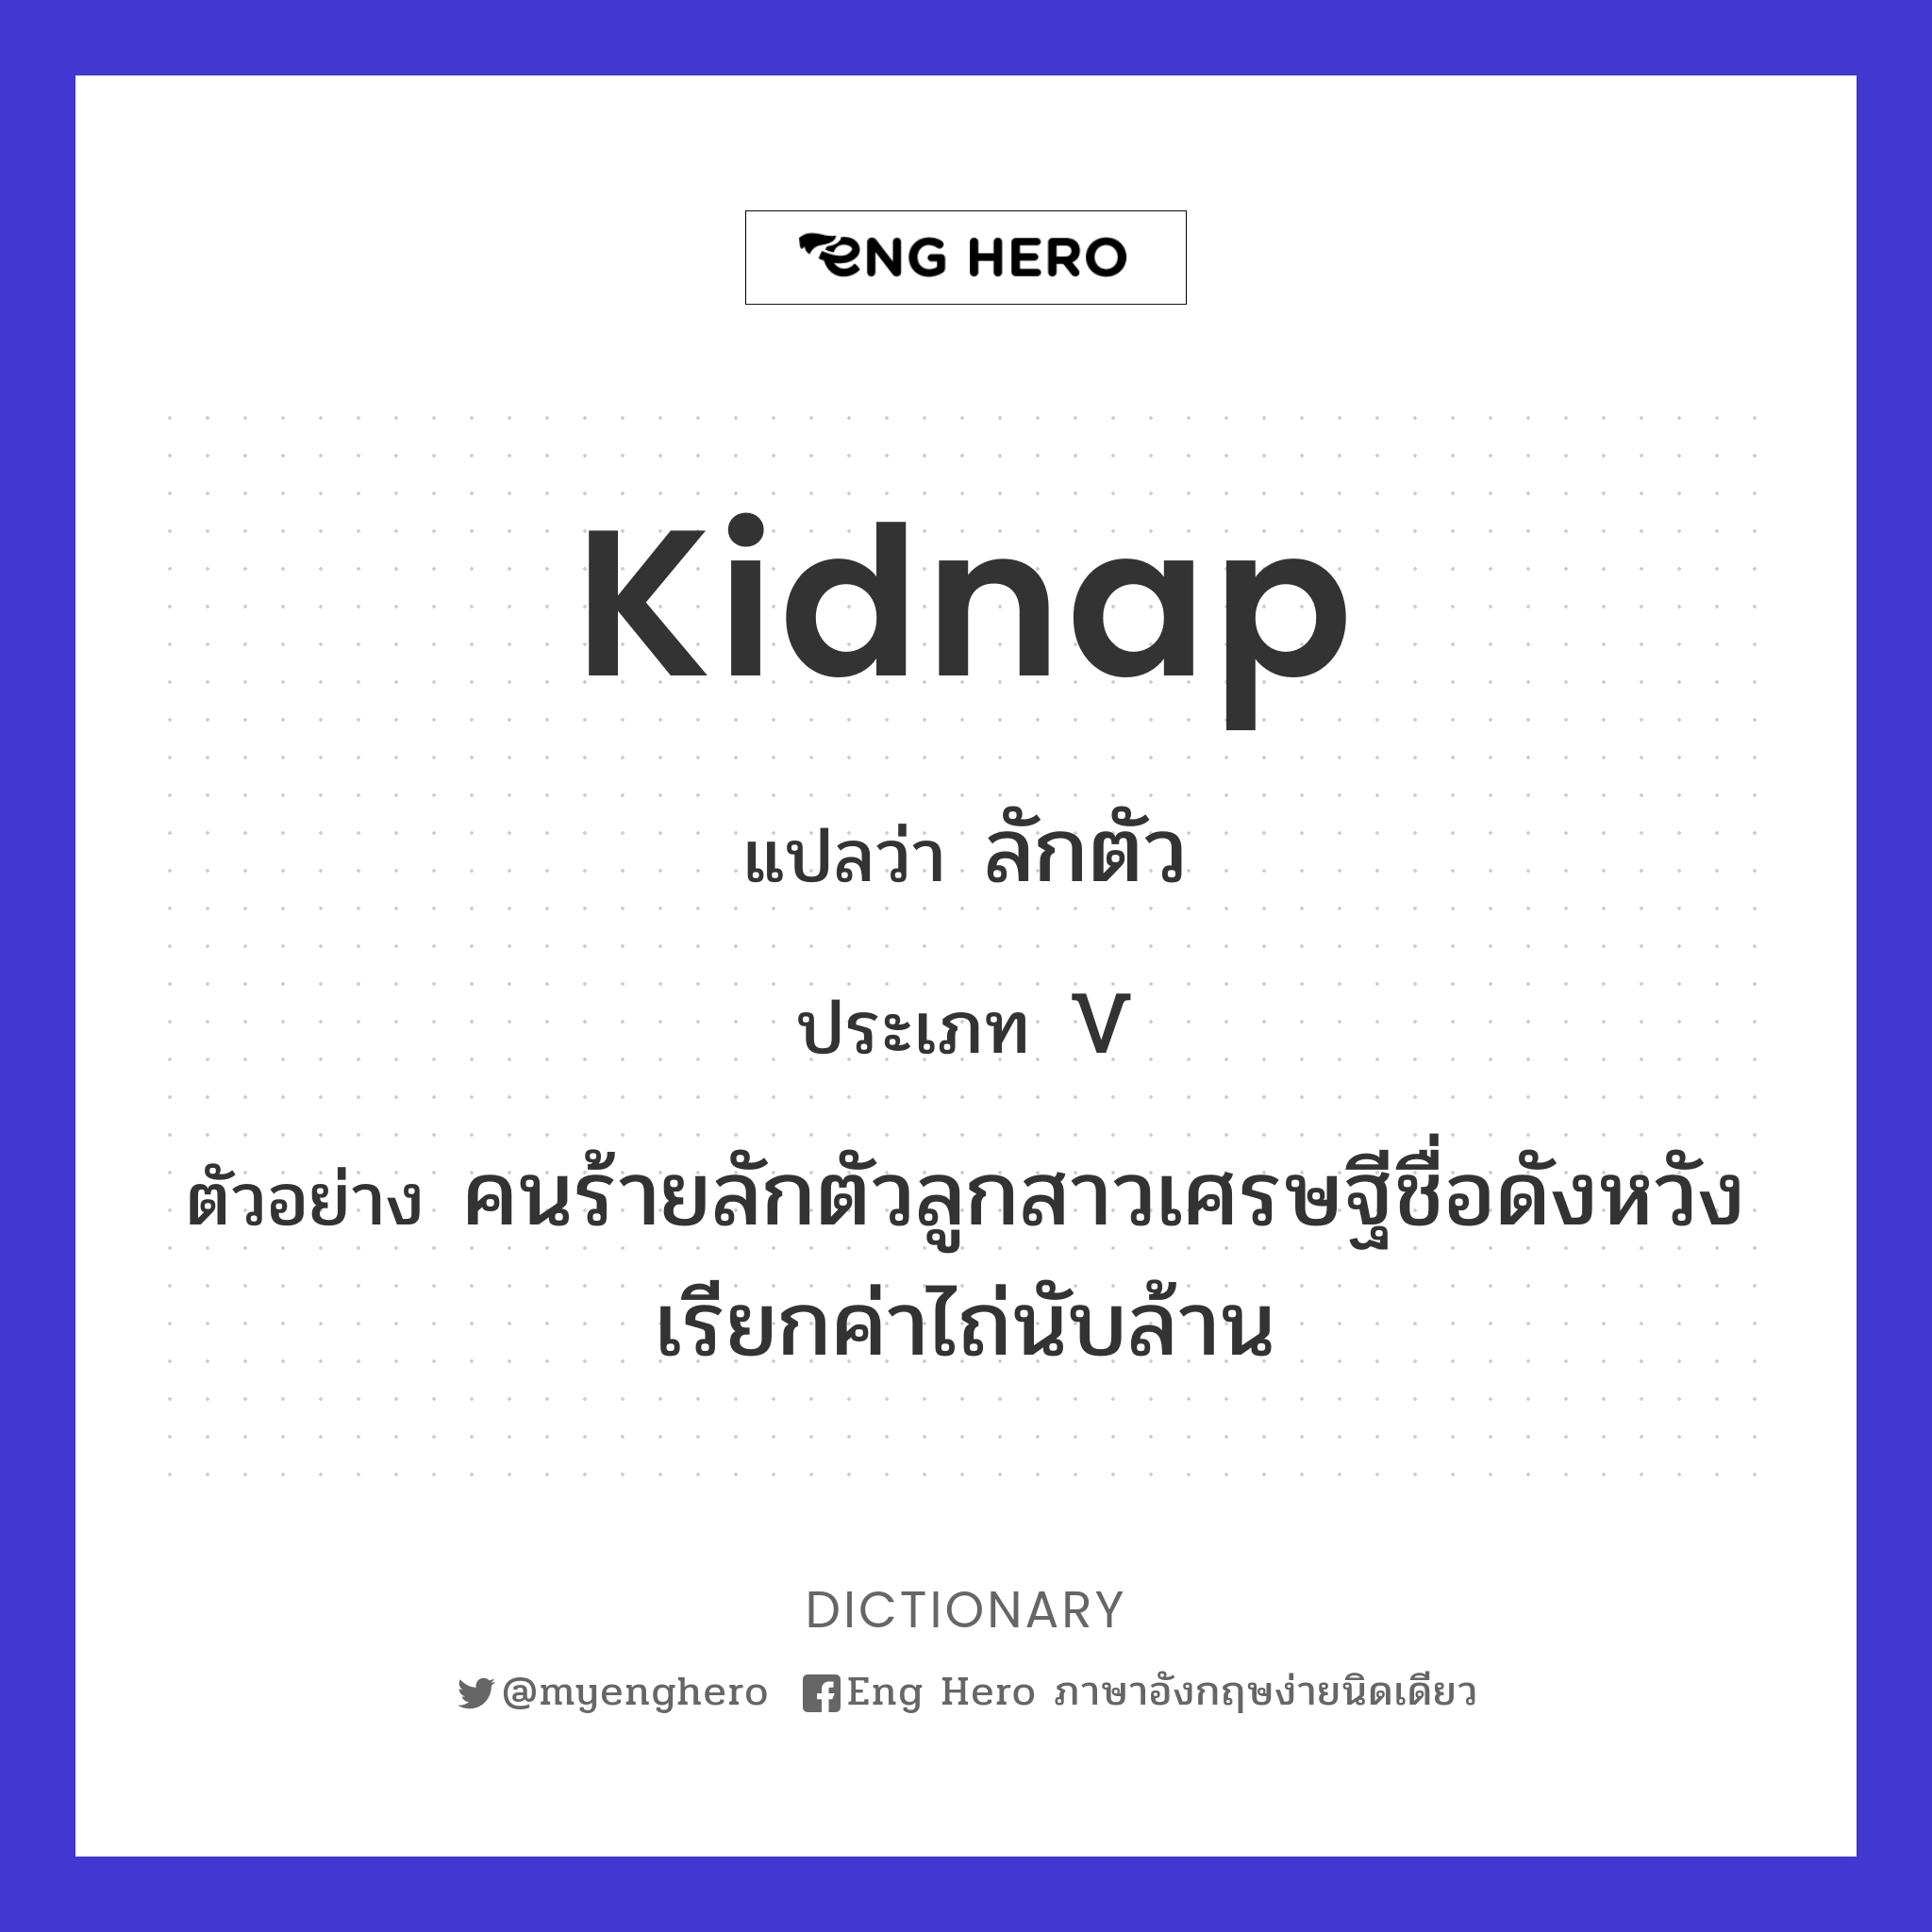 kidnap